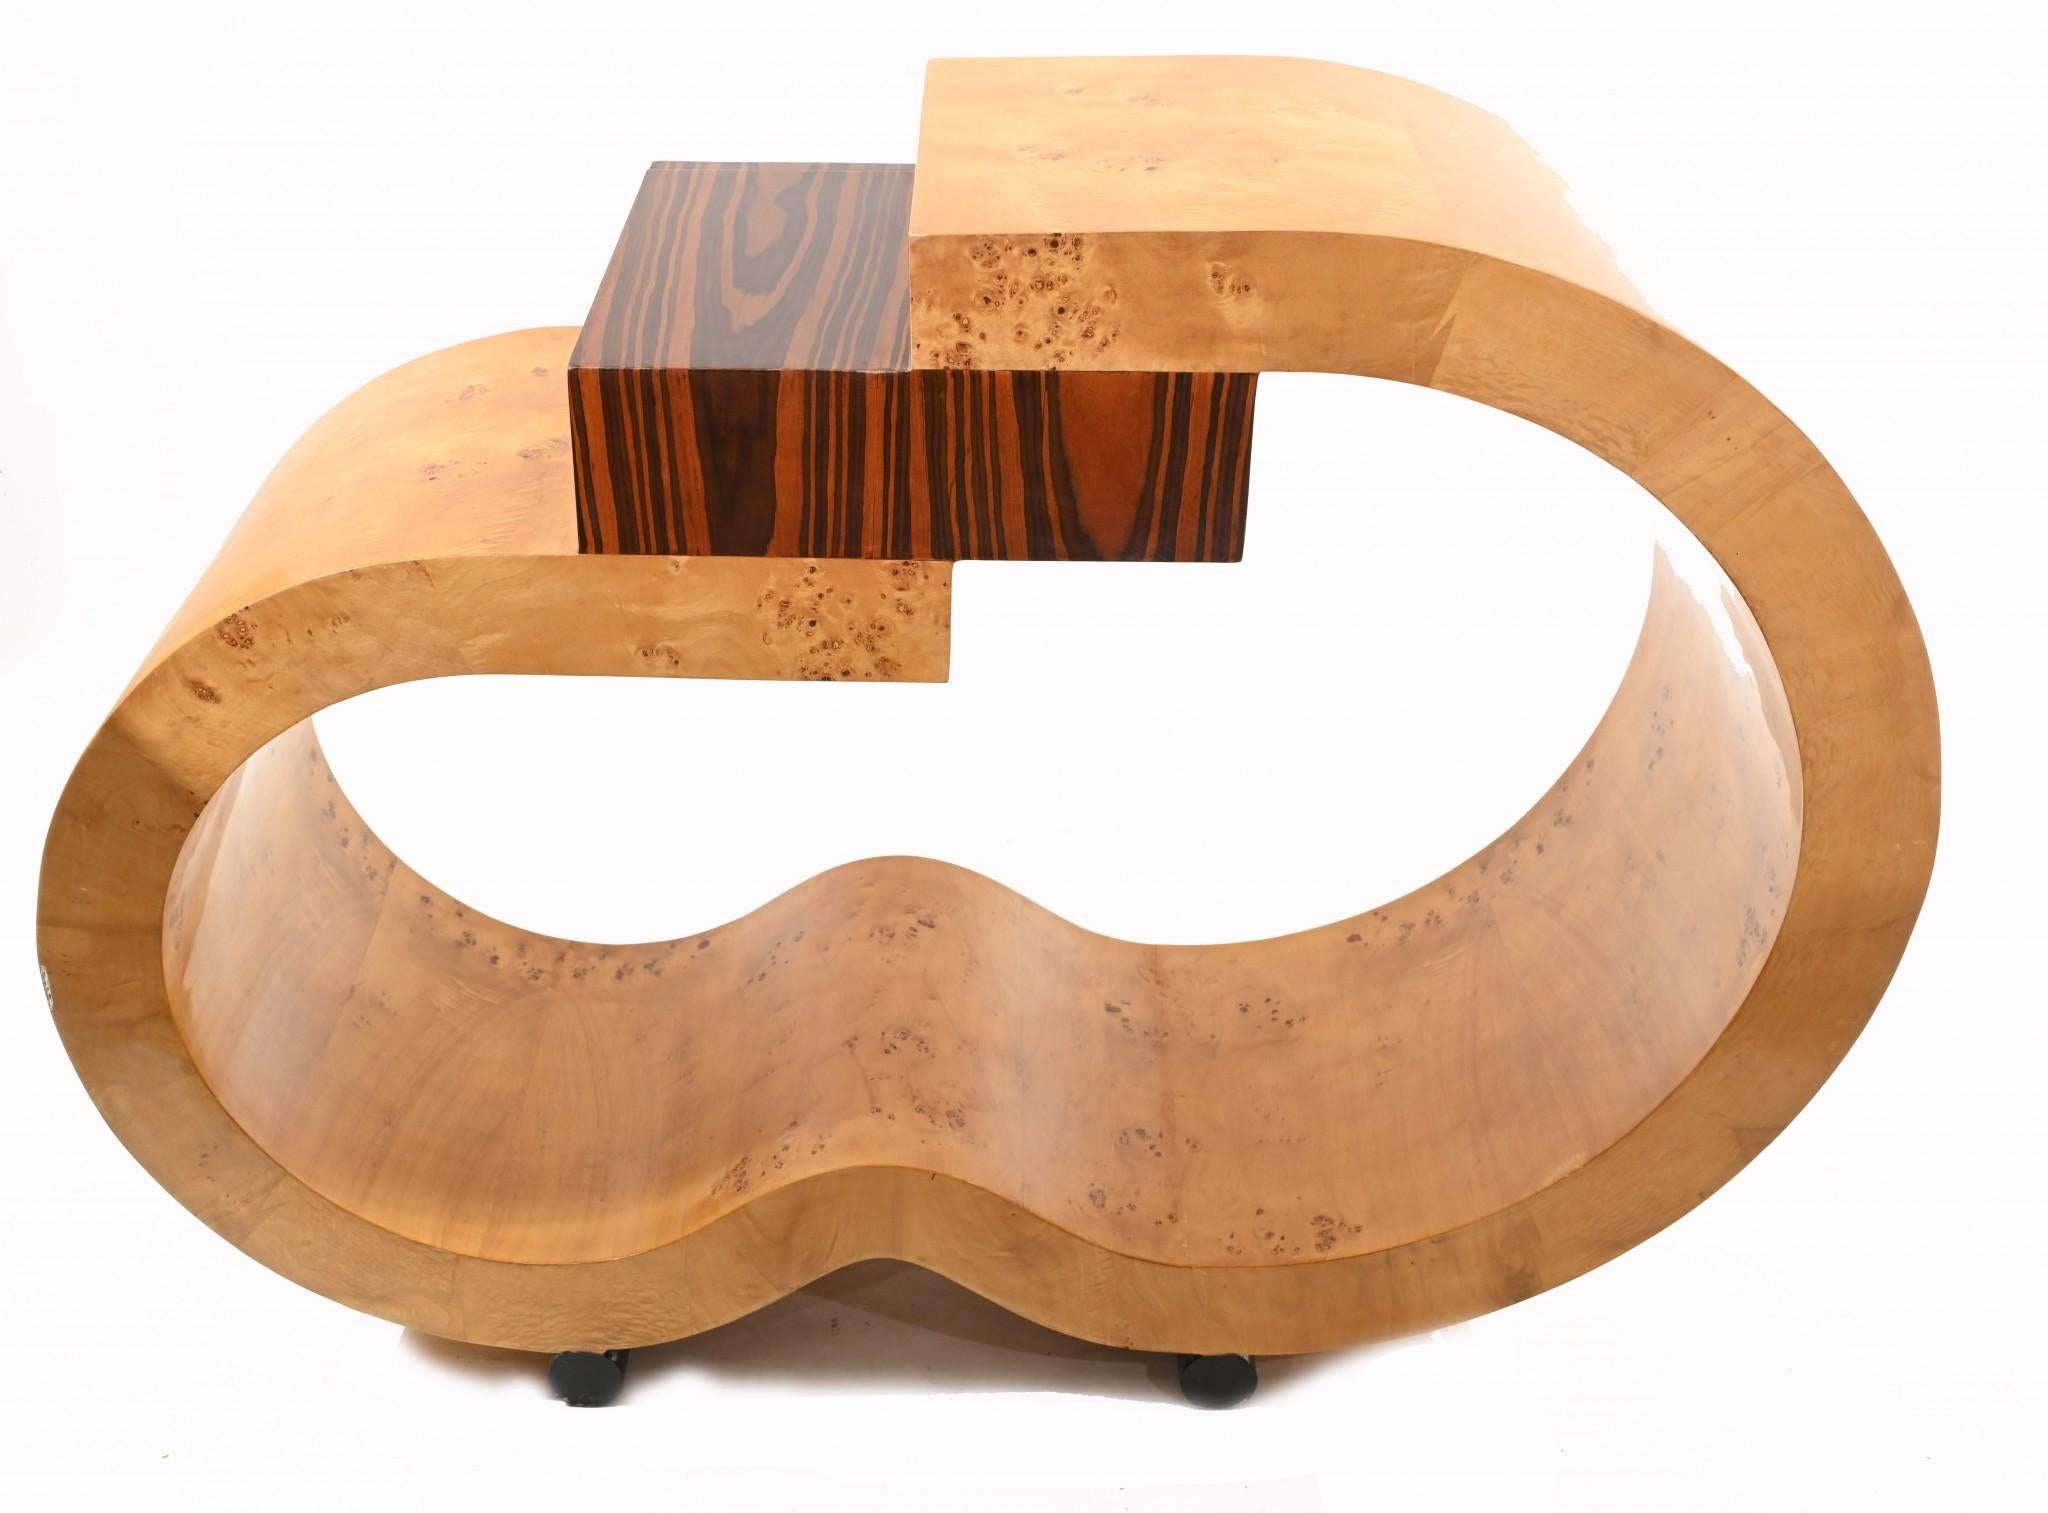 Table console de style art déco
Design/One très unique, à mettre en valeur dans n'importe quelle pièce.
J'aime les courbes du noyer blond, compensées par le tiroir en bois de rose.
Design très épuré et minimal, idéal pour les intérieurs